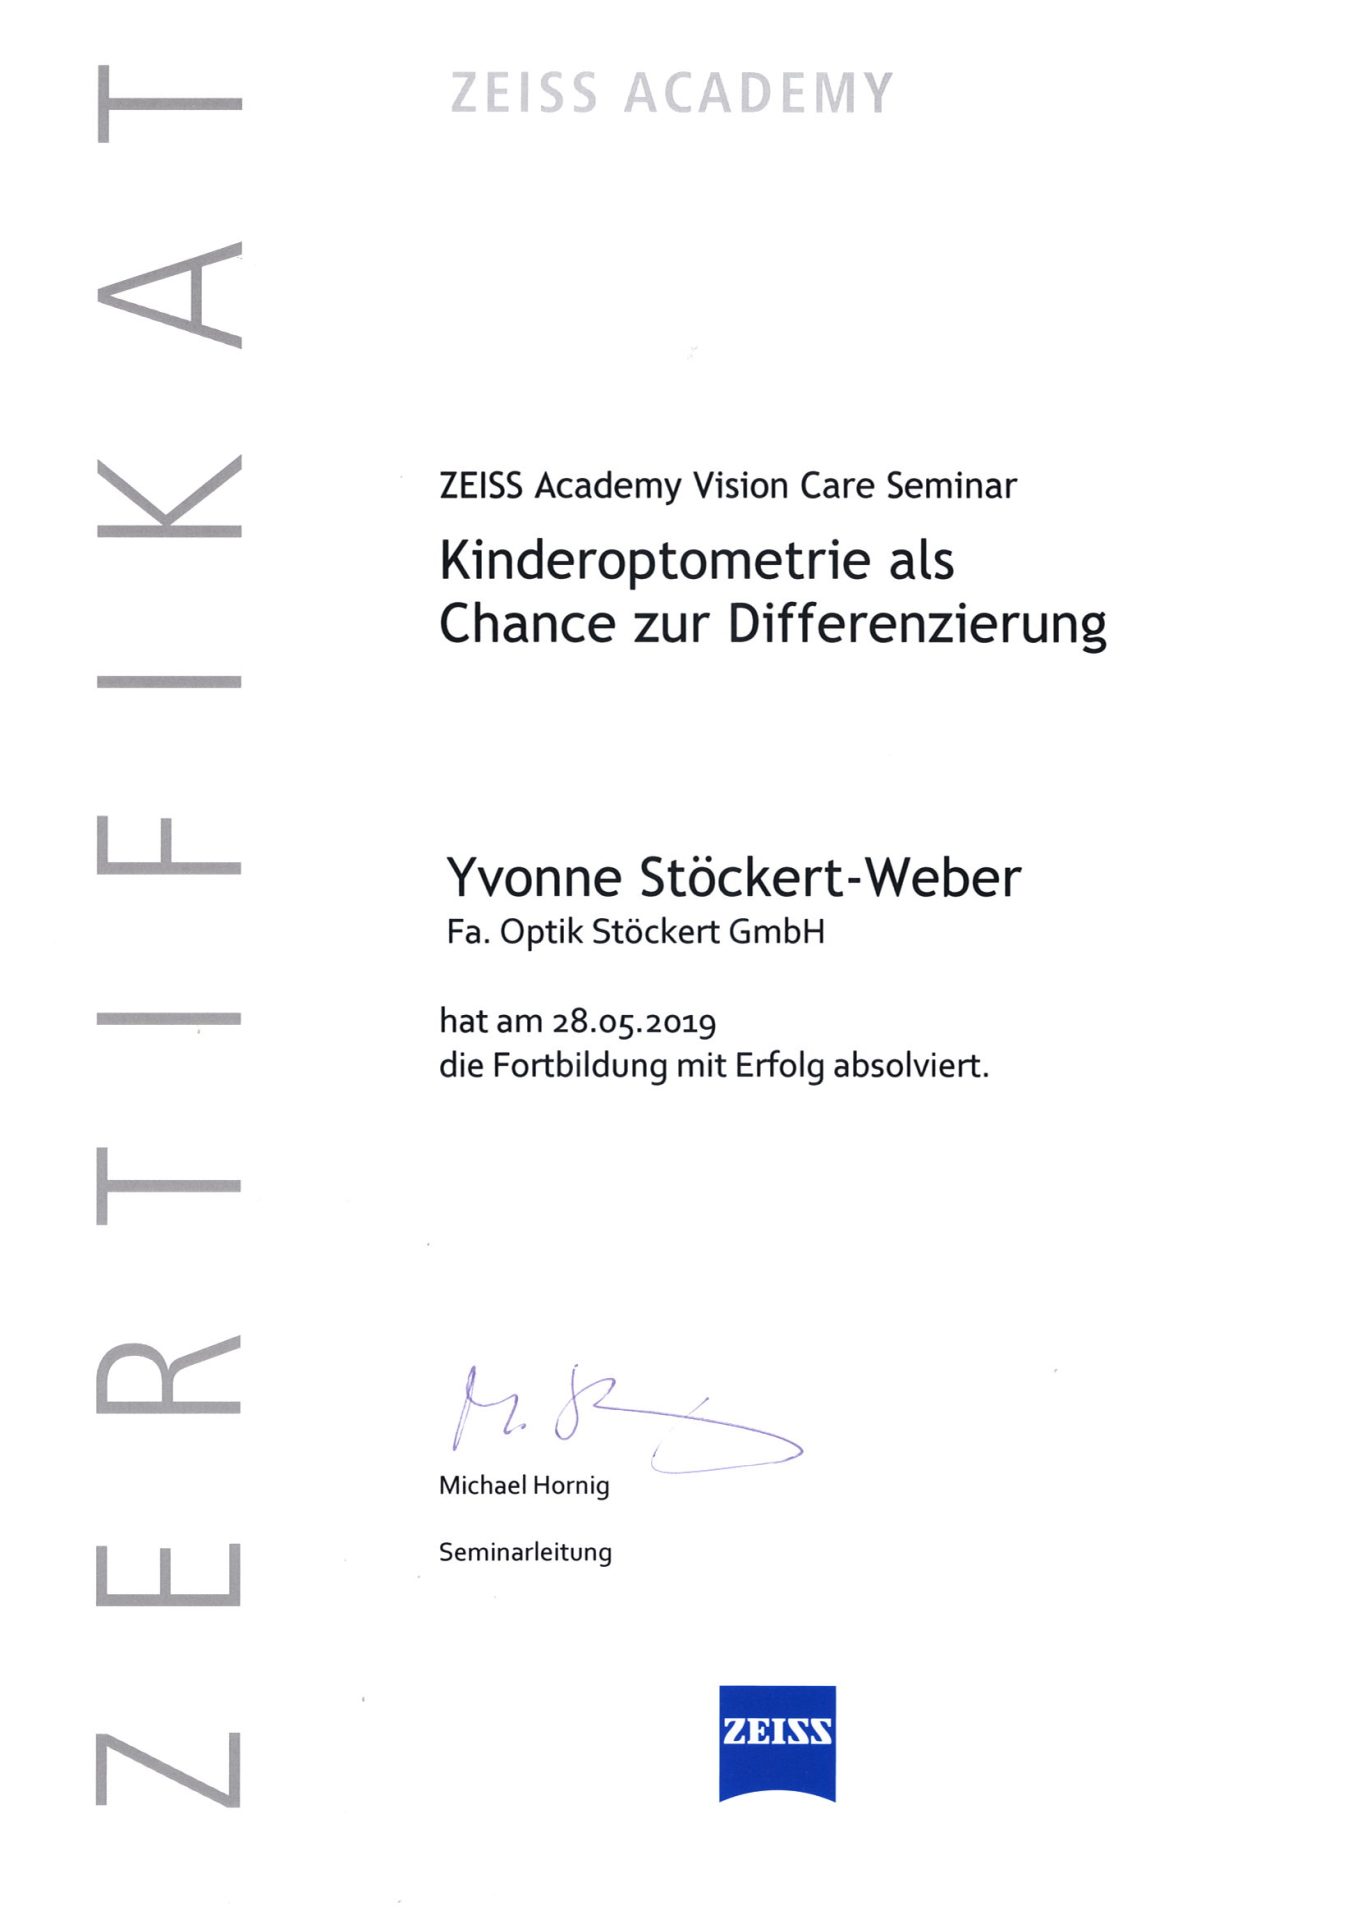 ZEISS Academy Vison Care Seminar Yvonne Stöckert-Weber